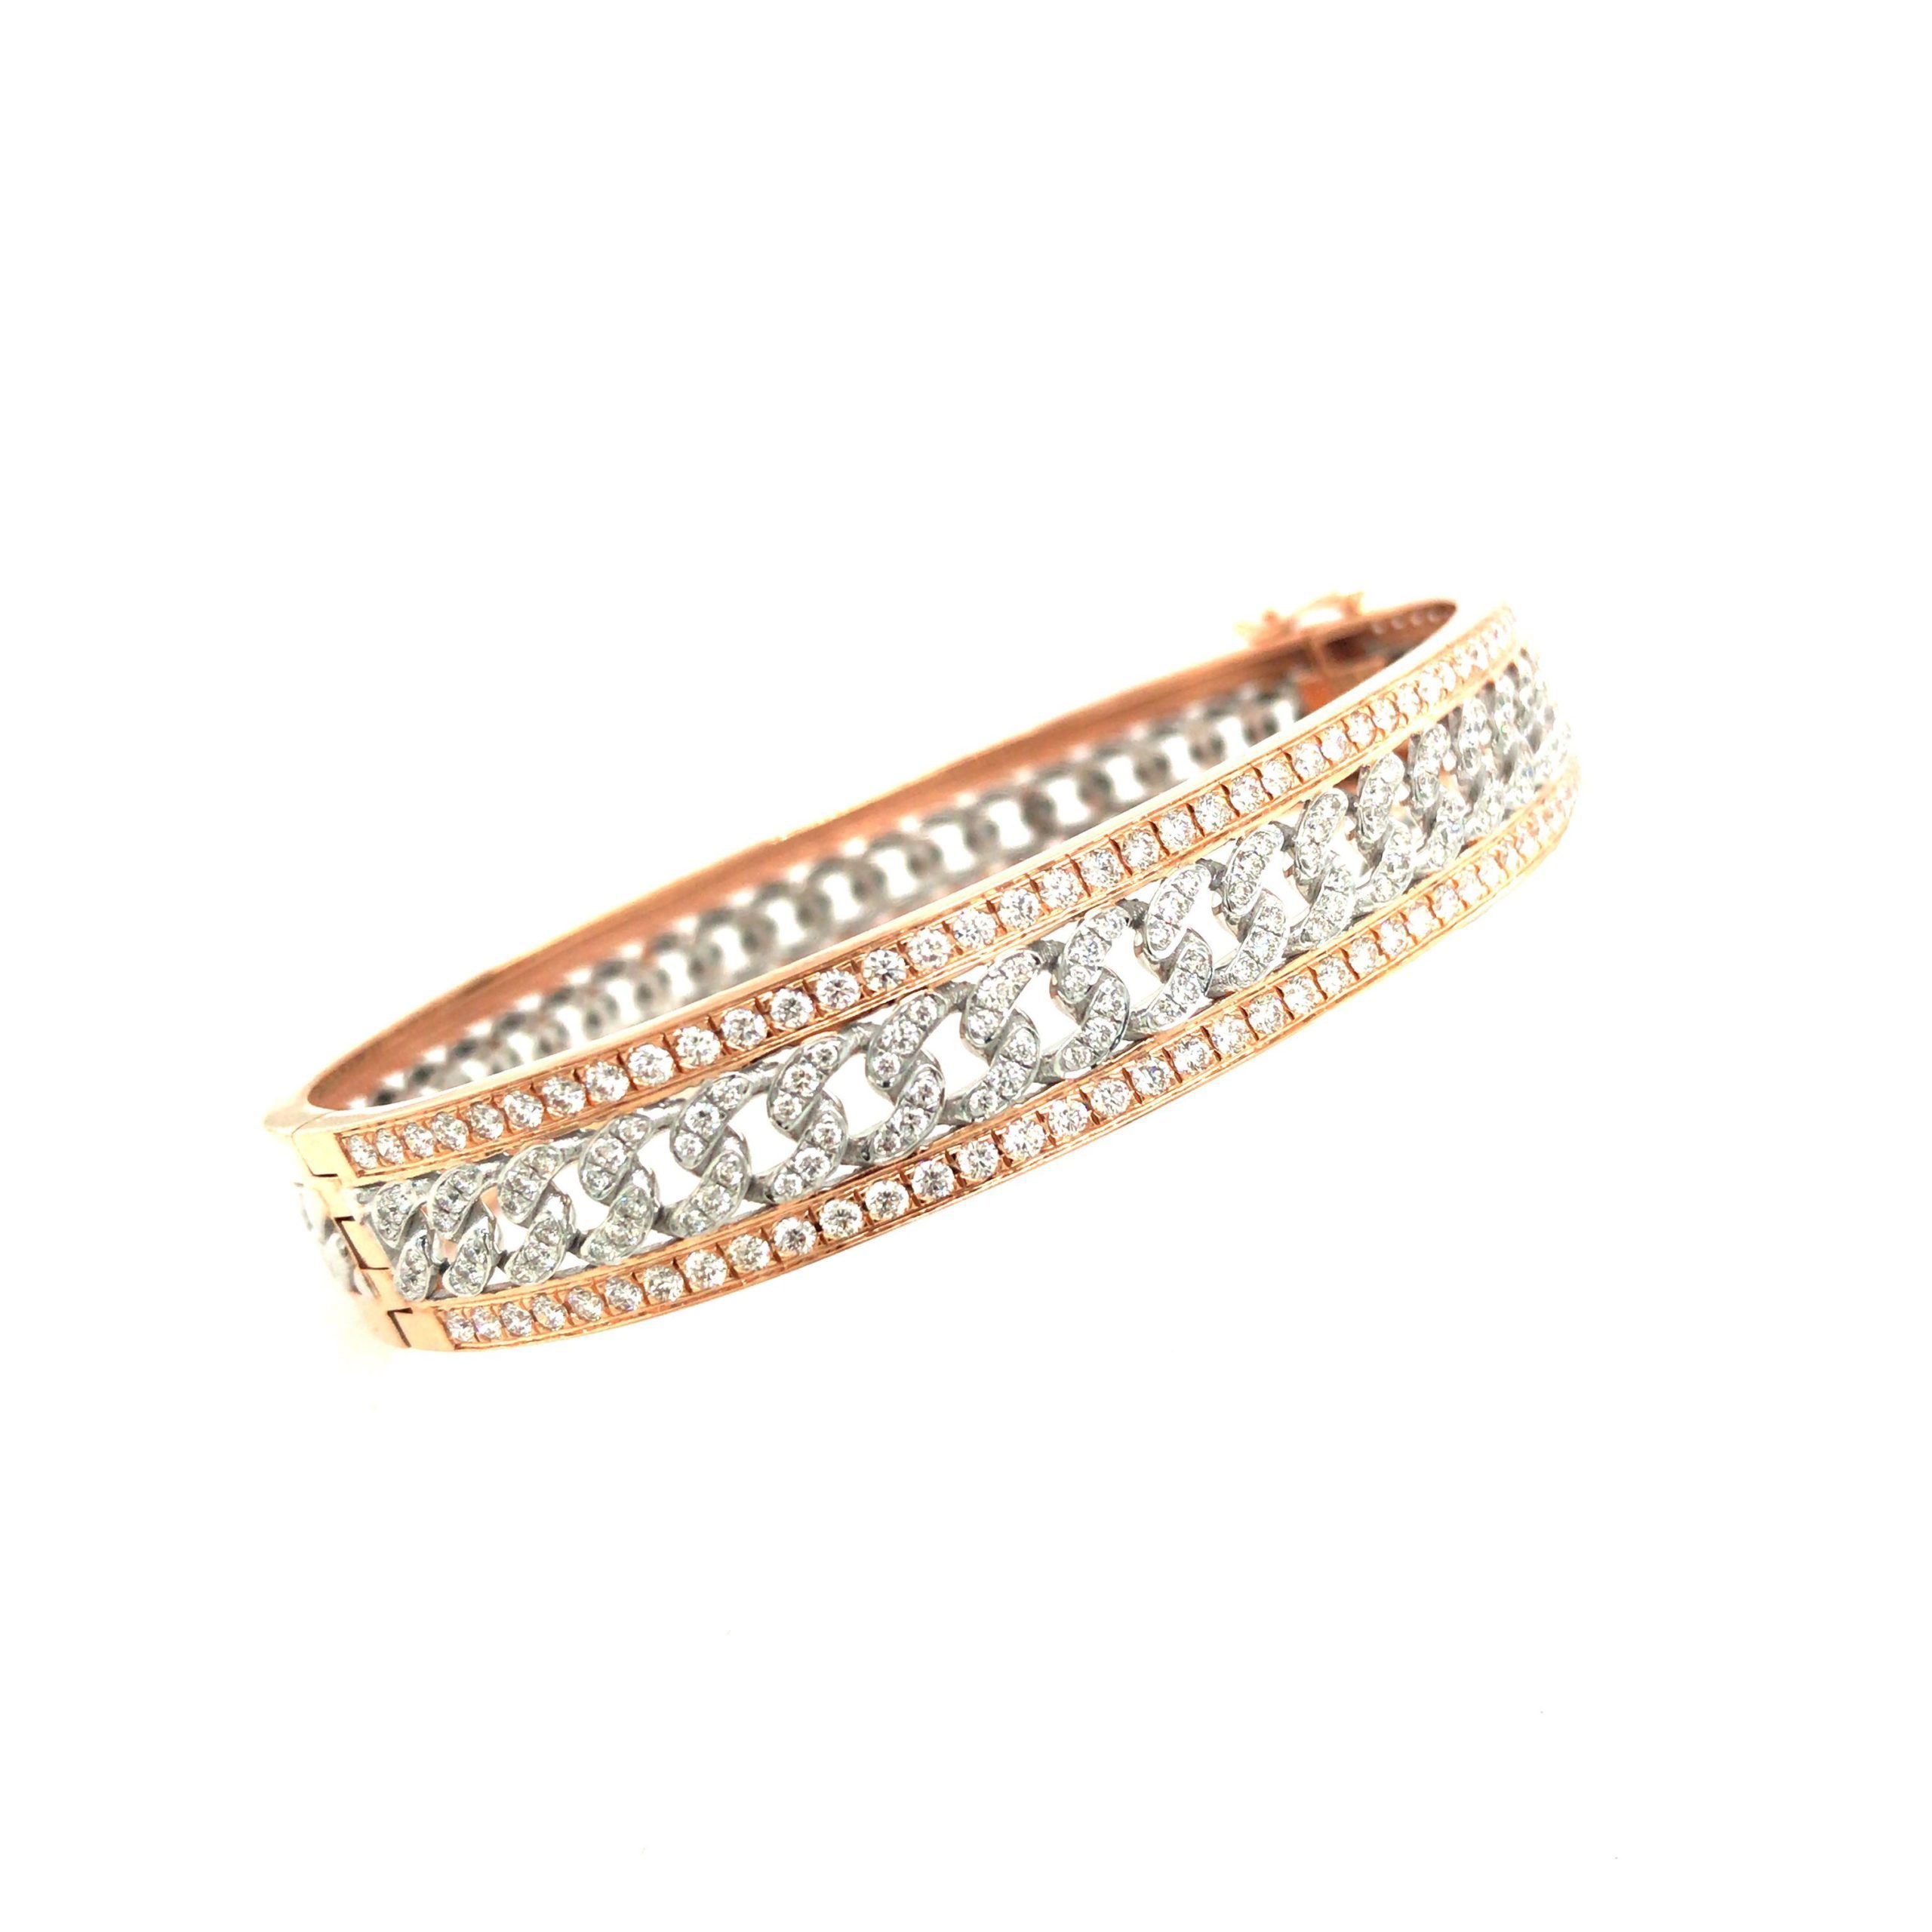 1 Carat Diamond Tennis Bracelet 14k Gold - Bracelets Jewelry Collections